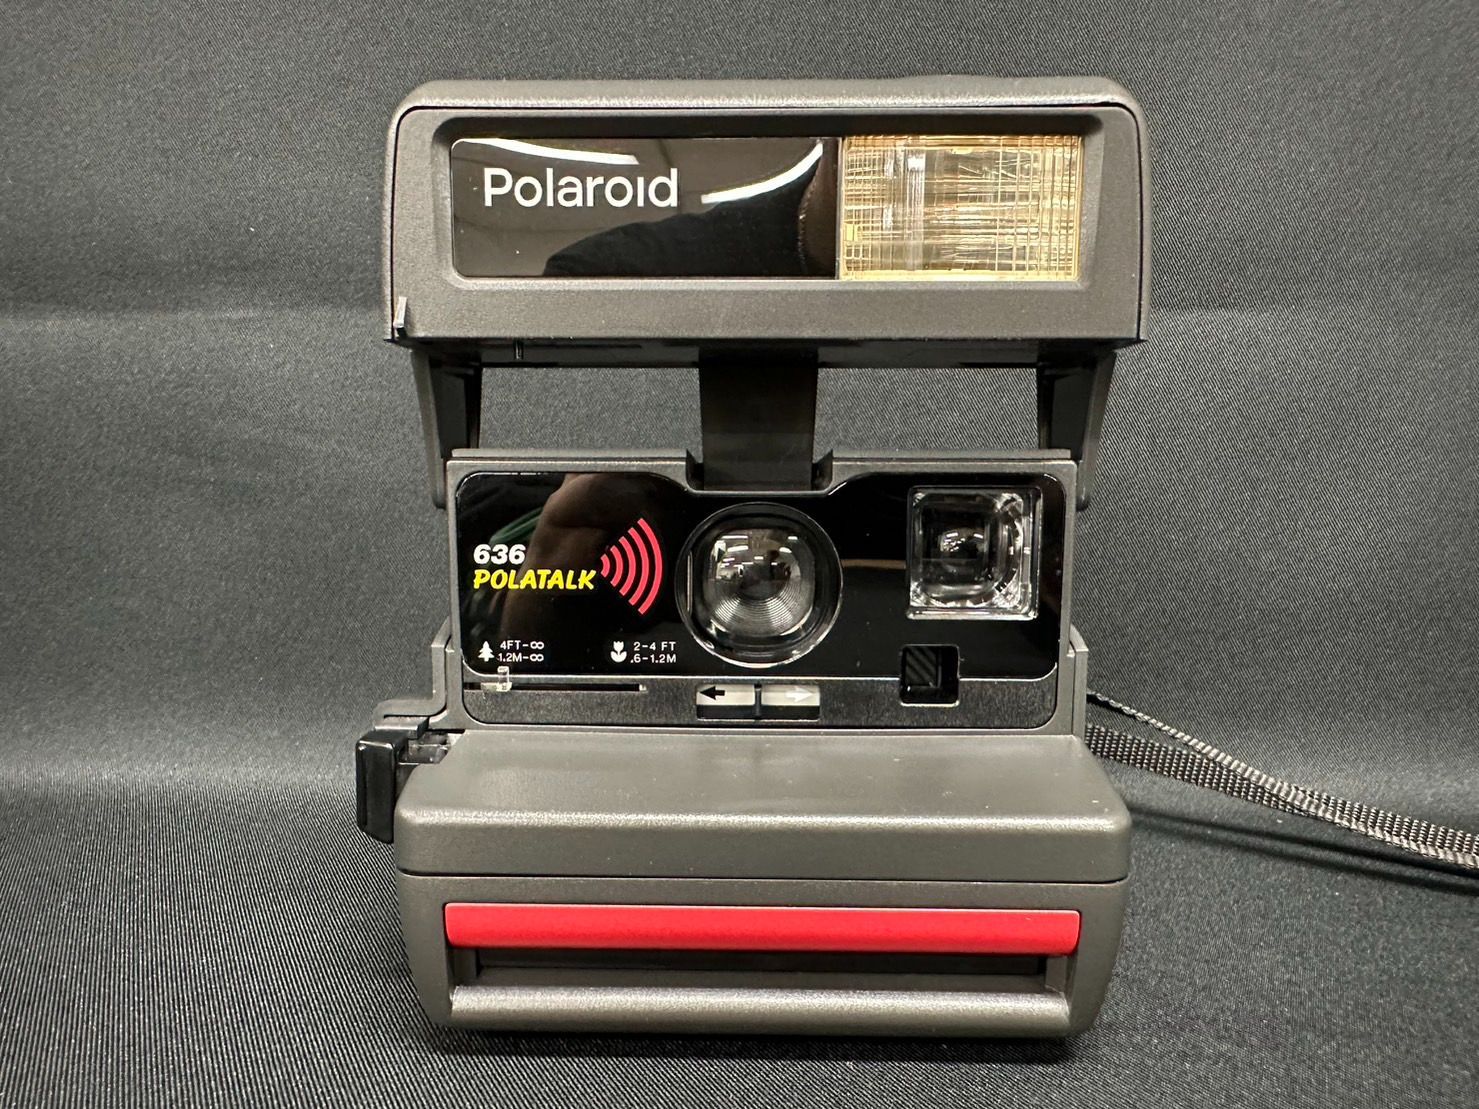 Polaroid  636 POLATALK   ポラロイドカメラ